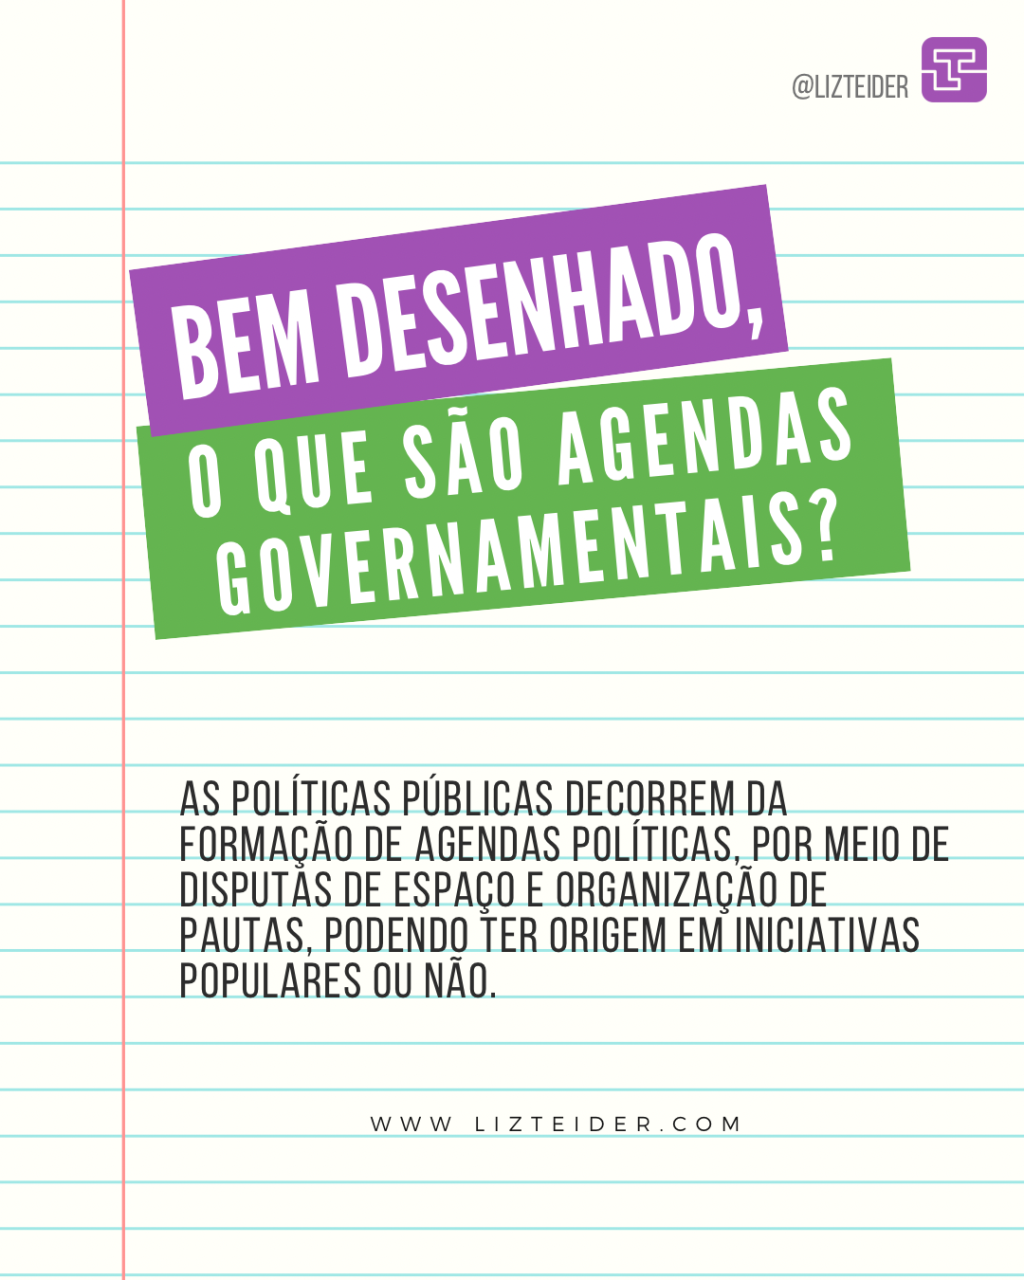 O que são agendas governamentais?